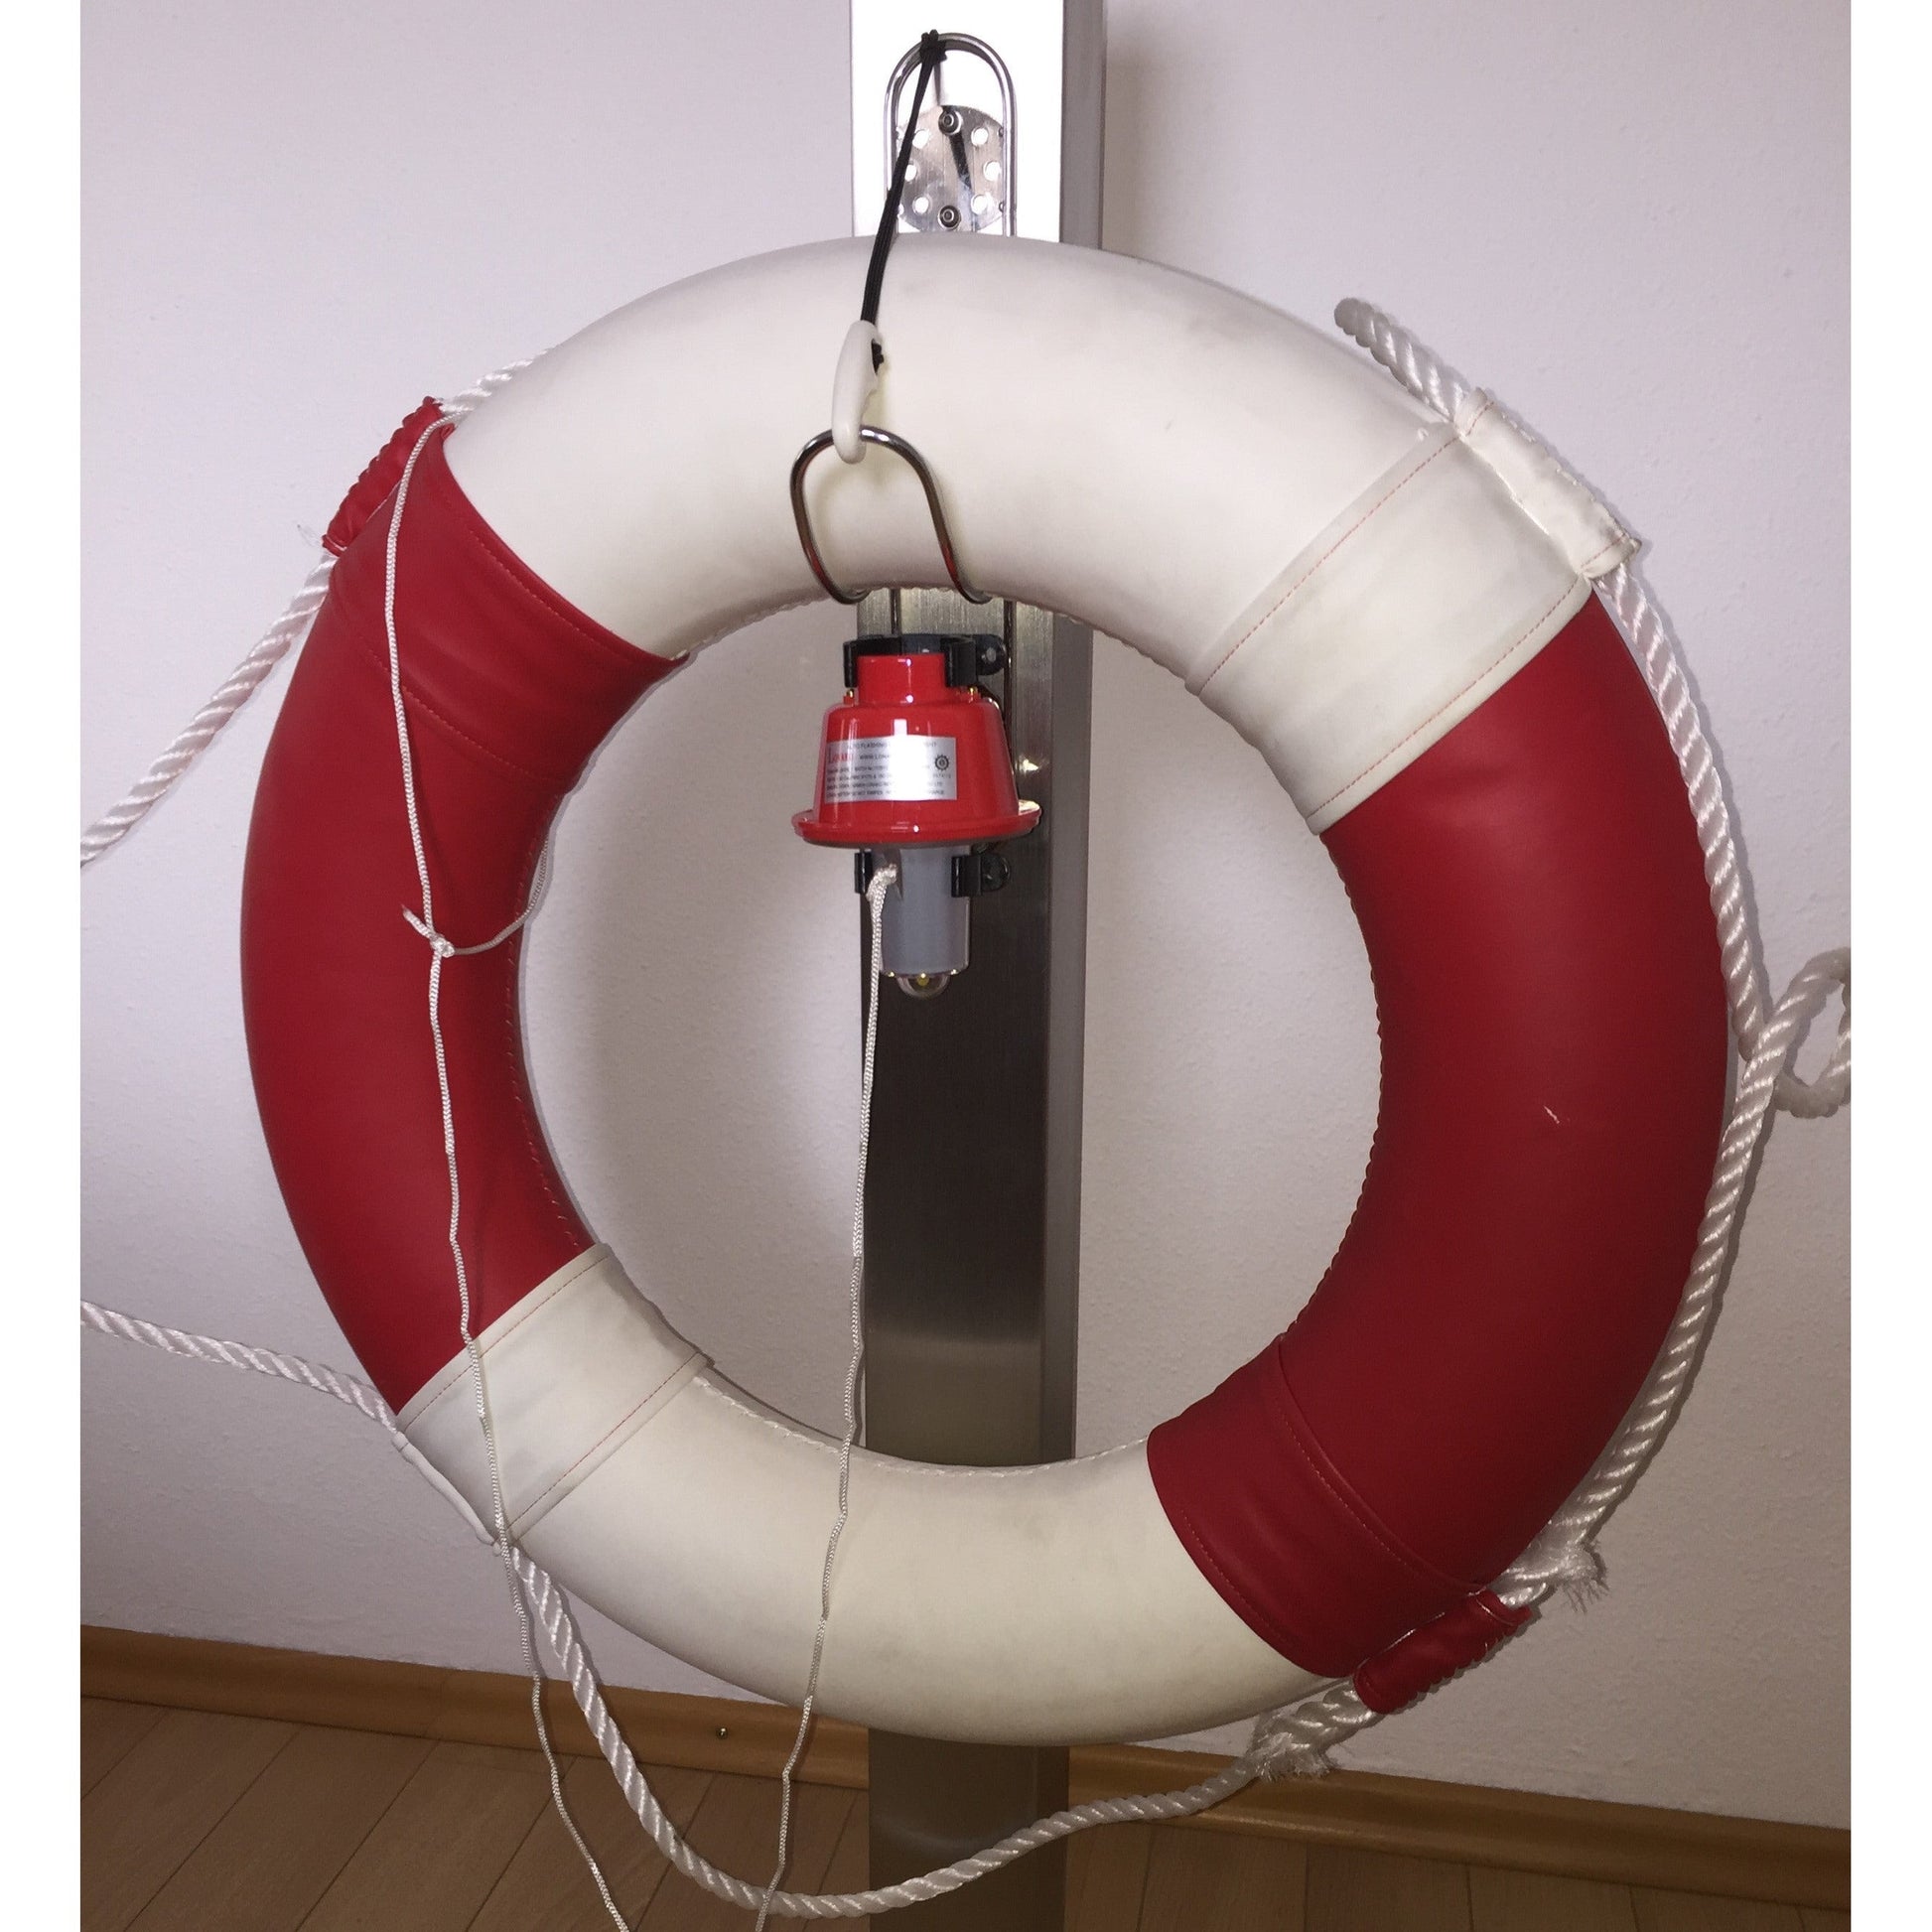 Pfosten für Rettungsringe (Edelstahl) - SeaCurity GmbH